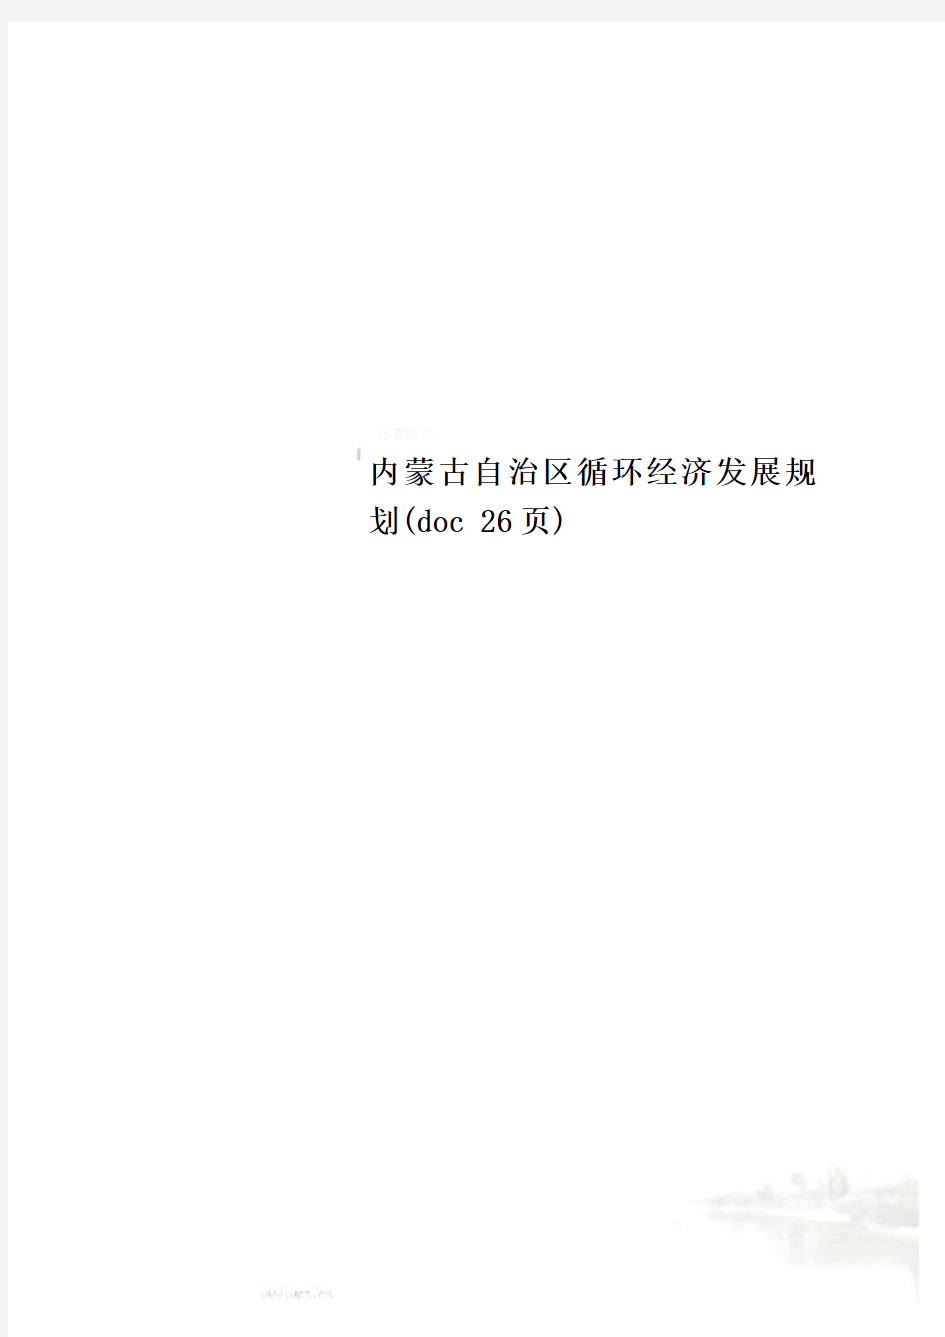 内蒙古自治区循环经济发展规划(doc 26页)